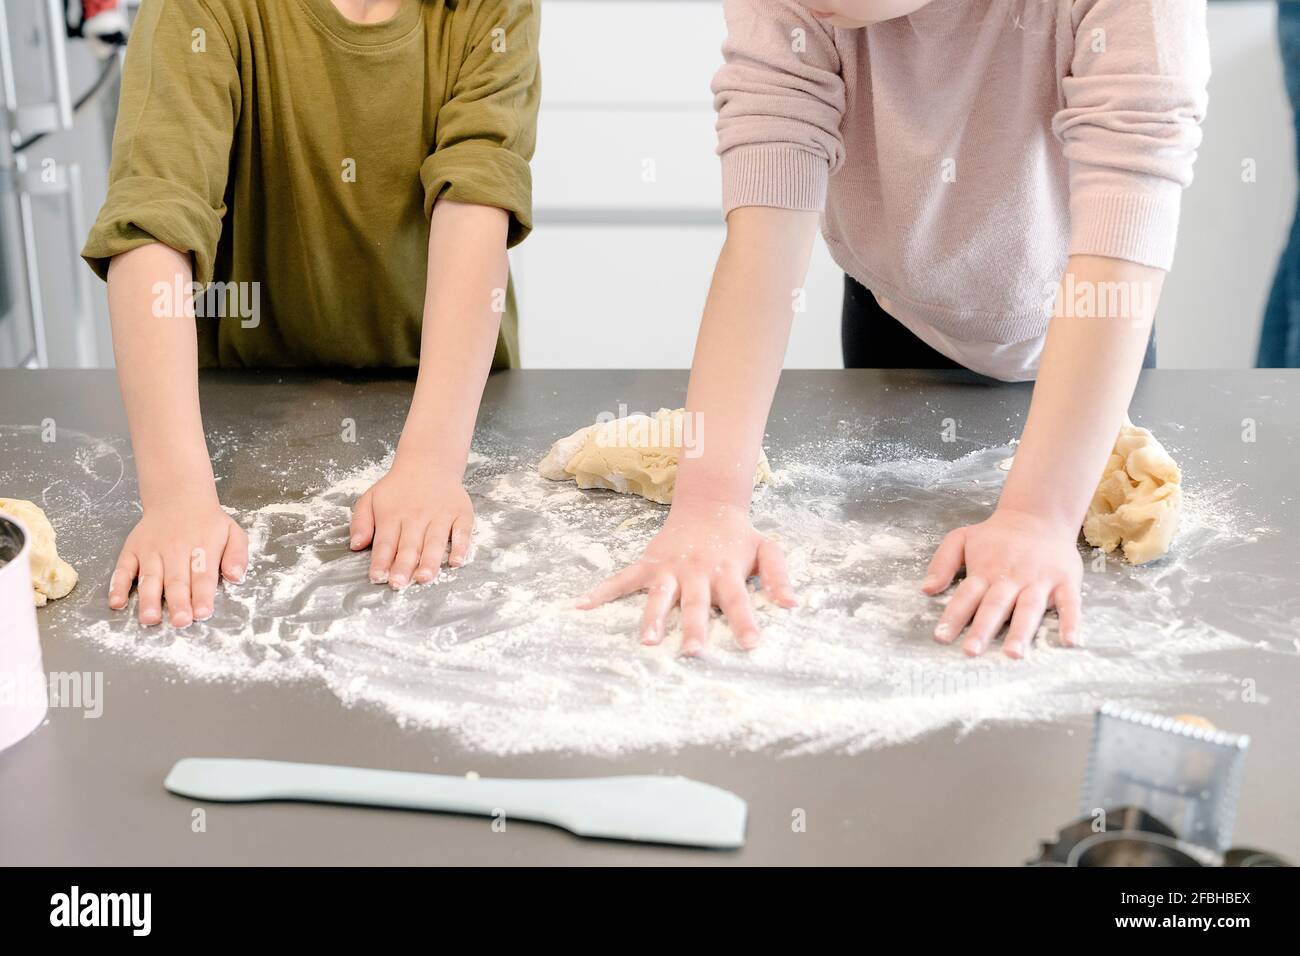 Les enfants répandant de la farine sur l'île de cuisine à la maison Banque D'Images